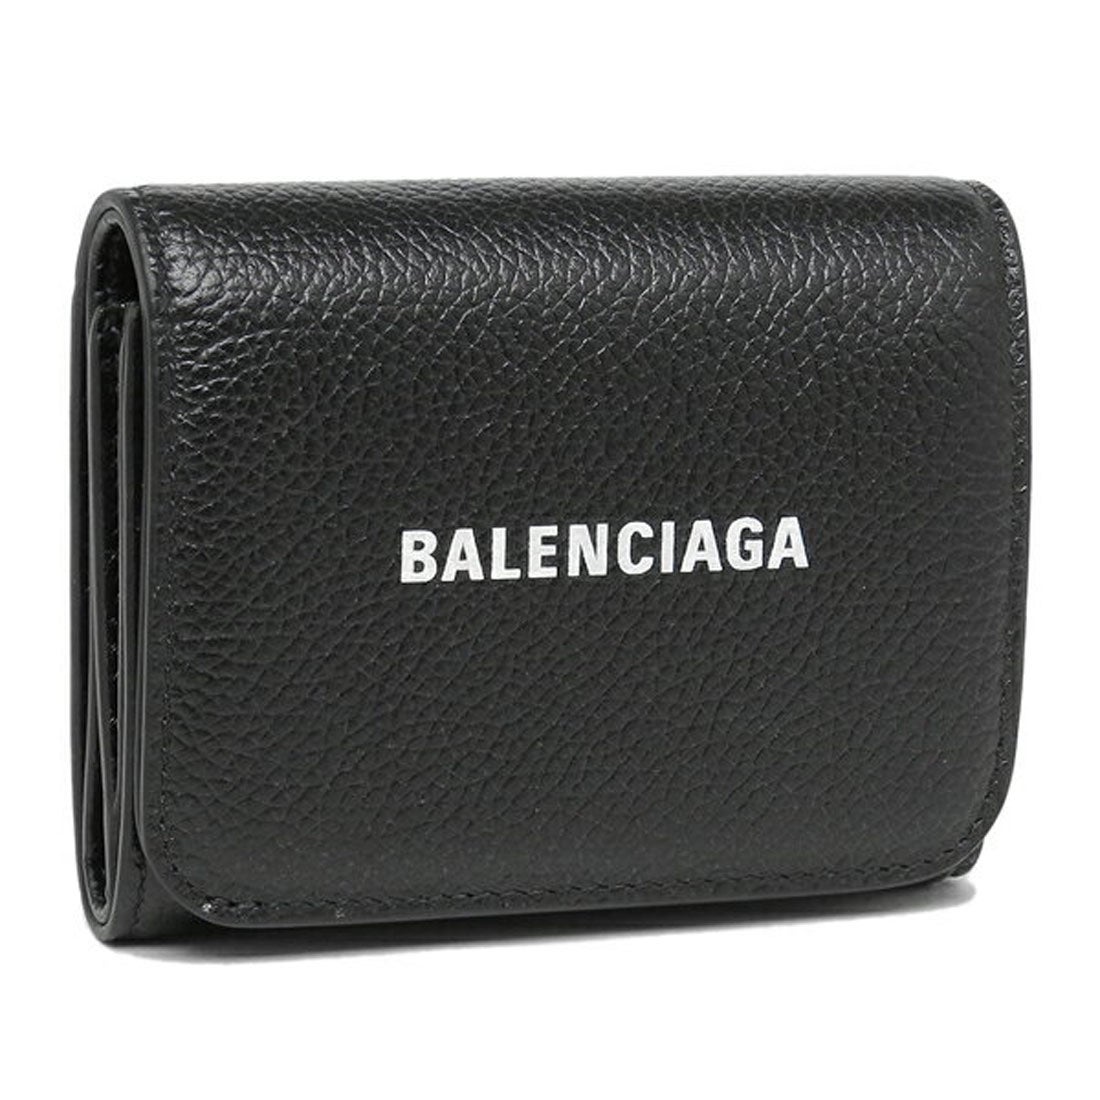 バレンシアガ BALENCIAGA 財布 三つ折り財布 キャッシュ ロゴ ミニ財布